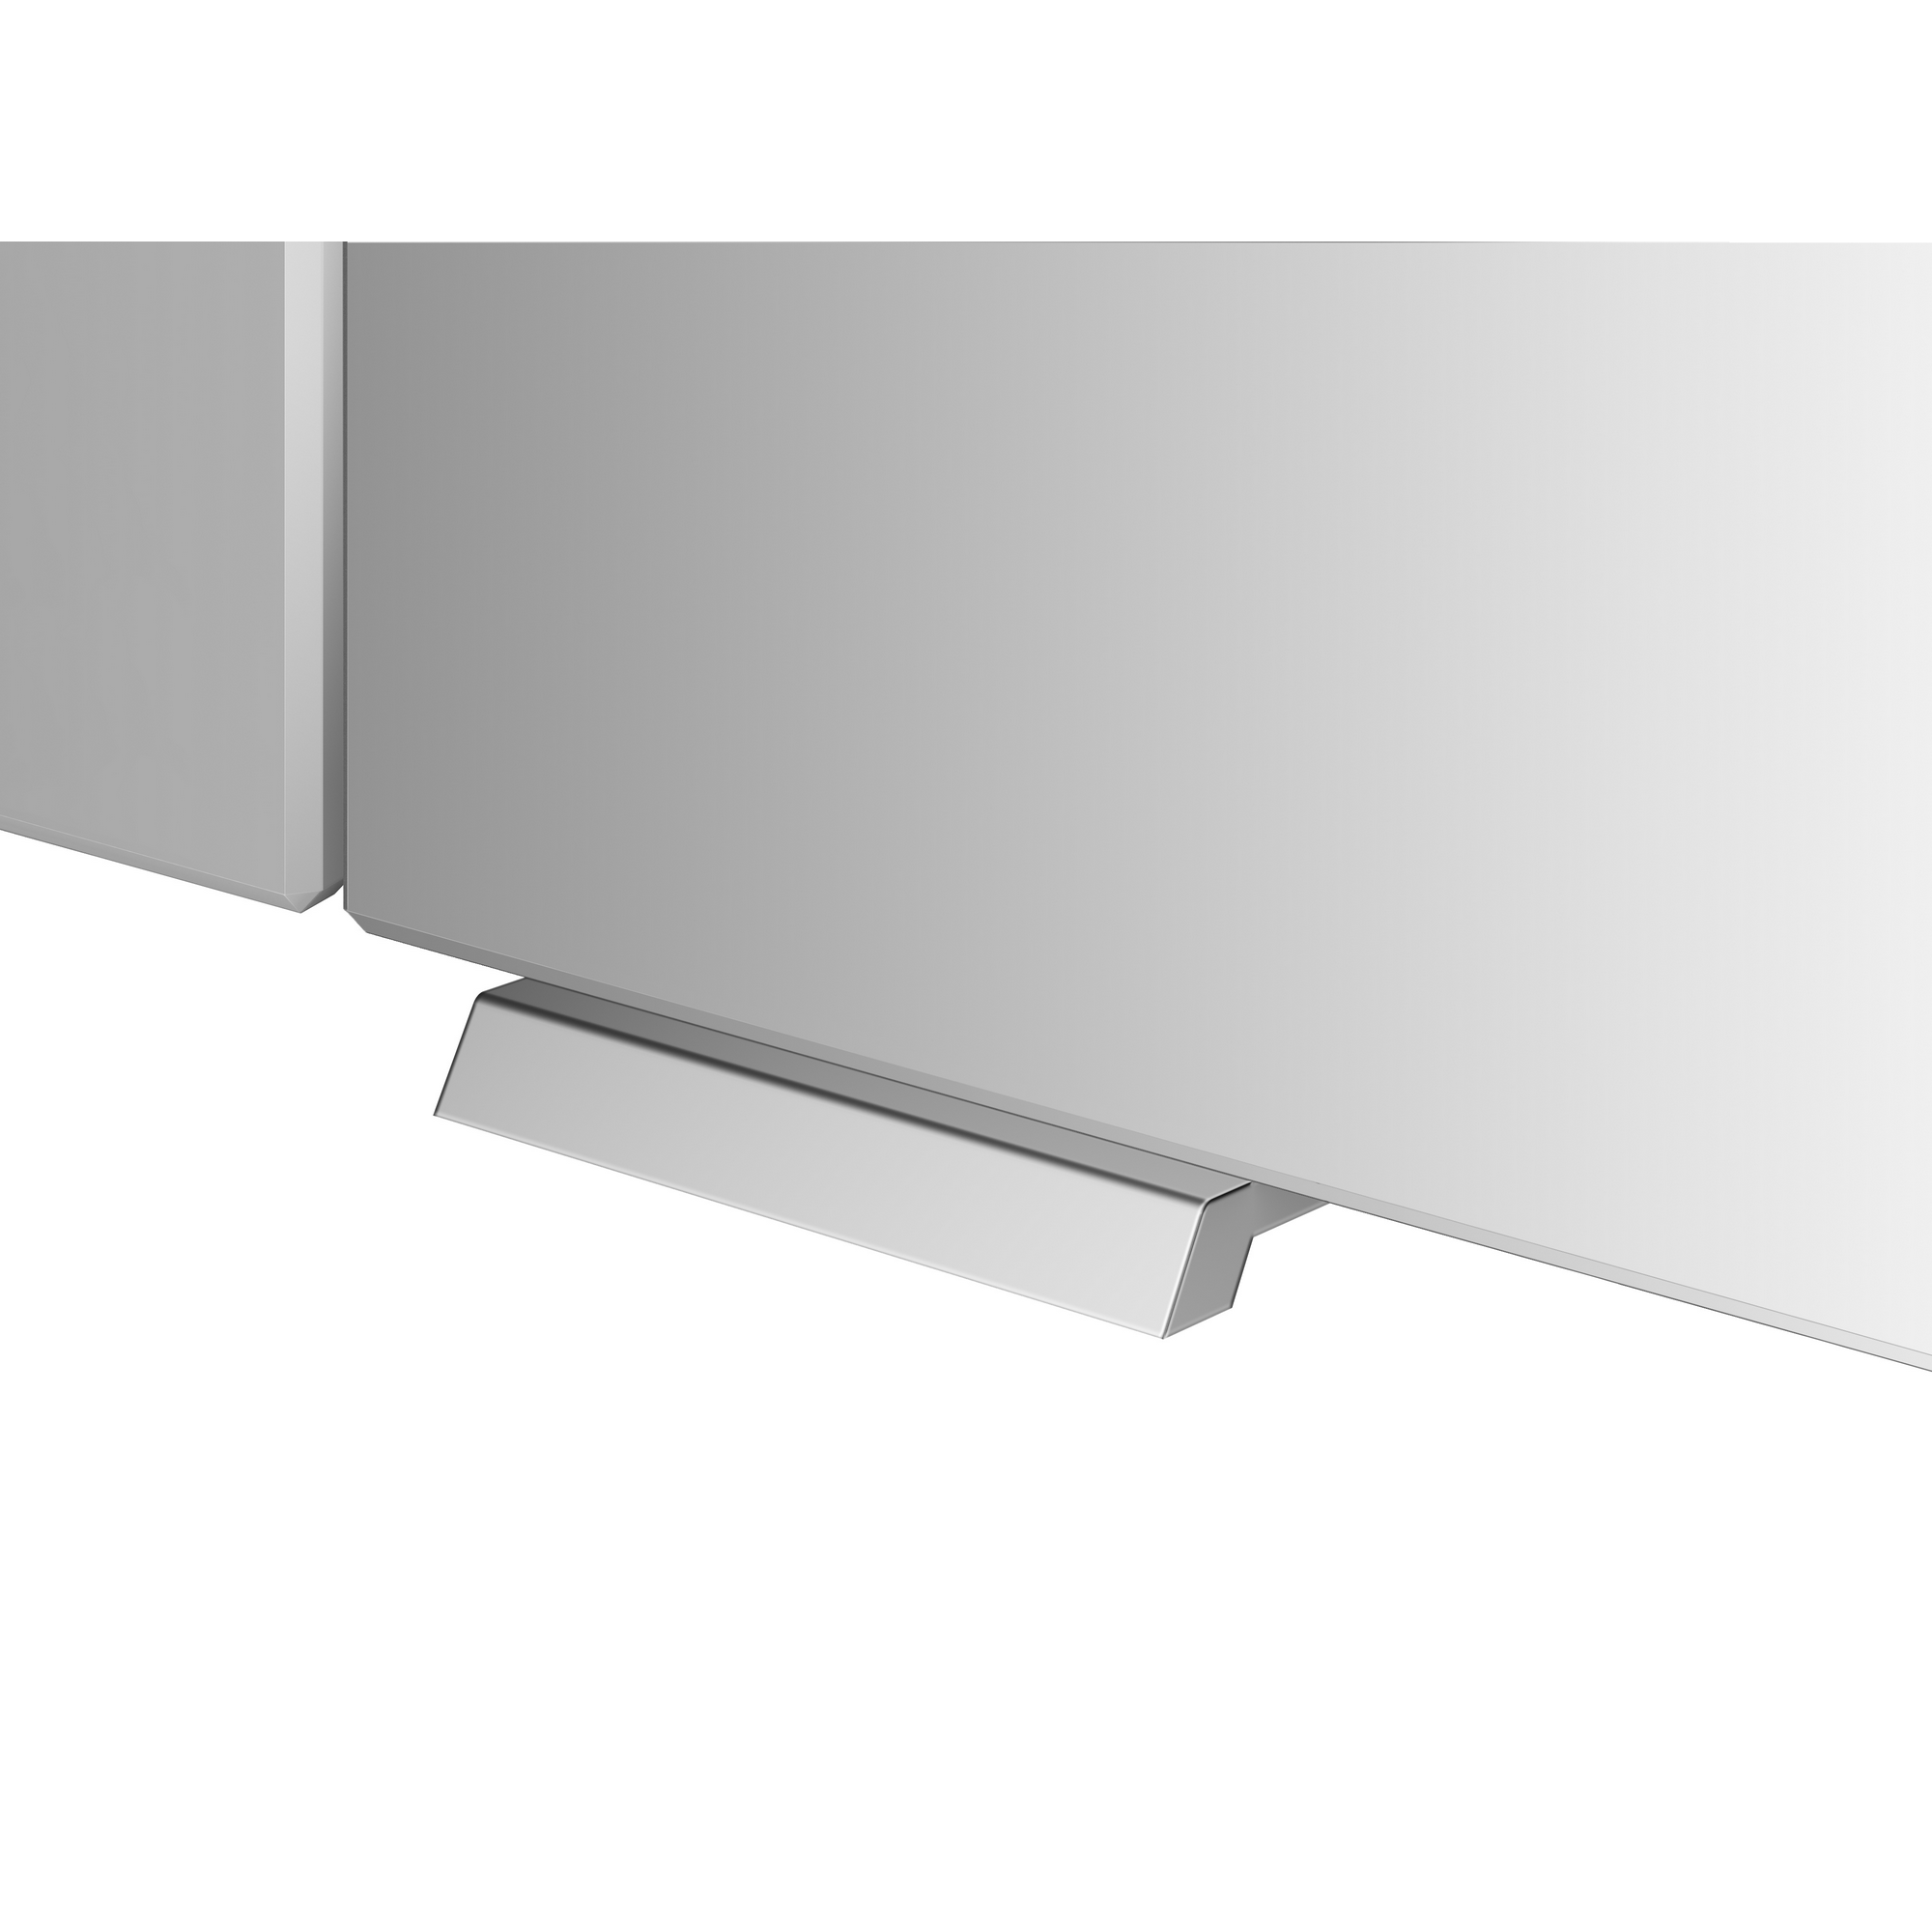 LED-Spiegelschrank 'KHX' anthrazit 120,4 x 74 x 14,2 cm + product picture